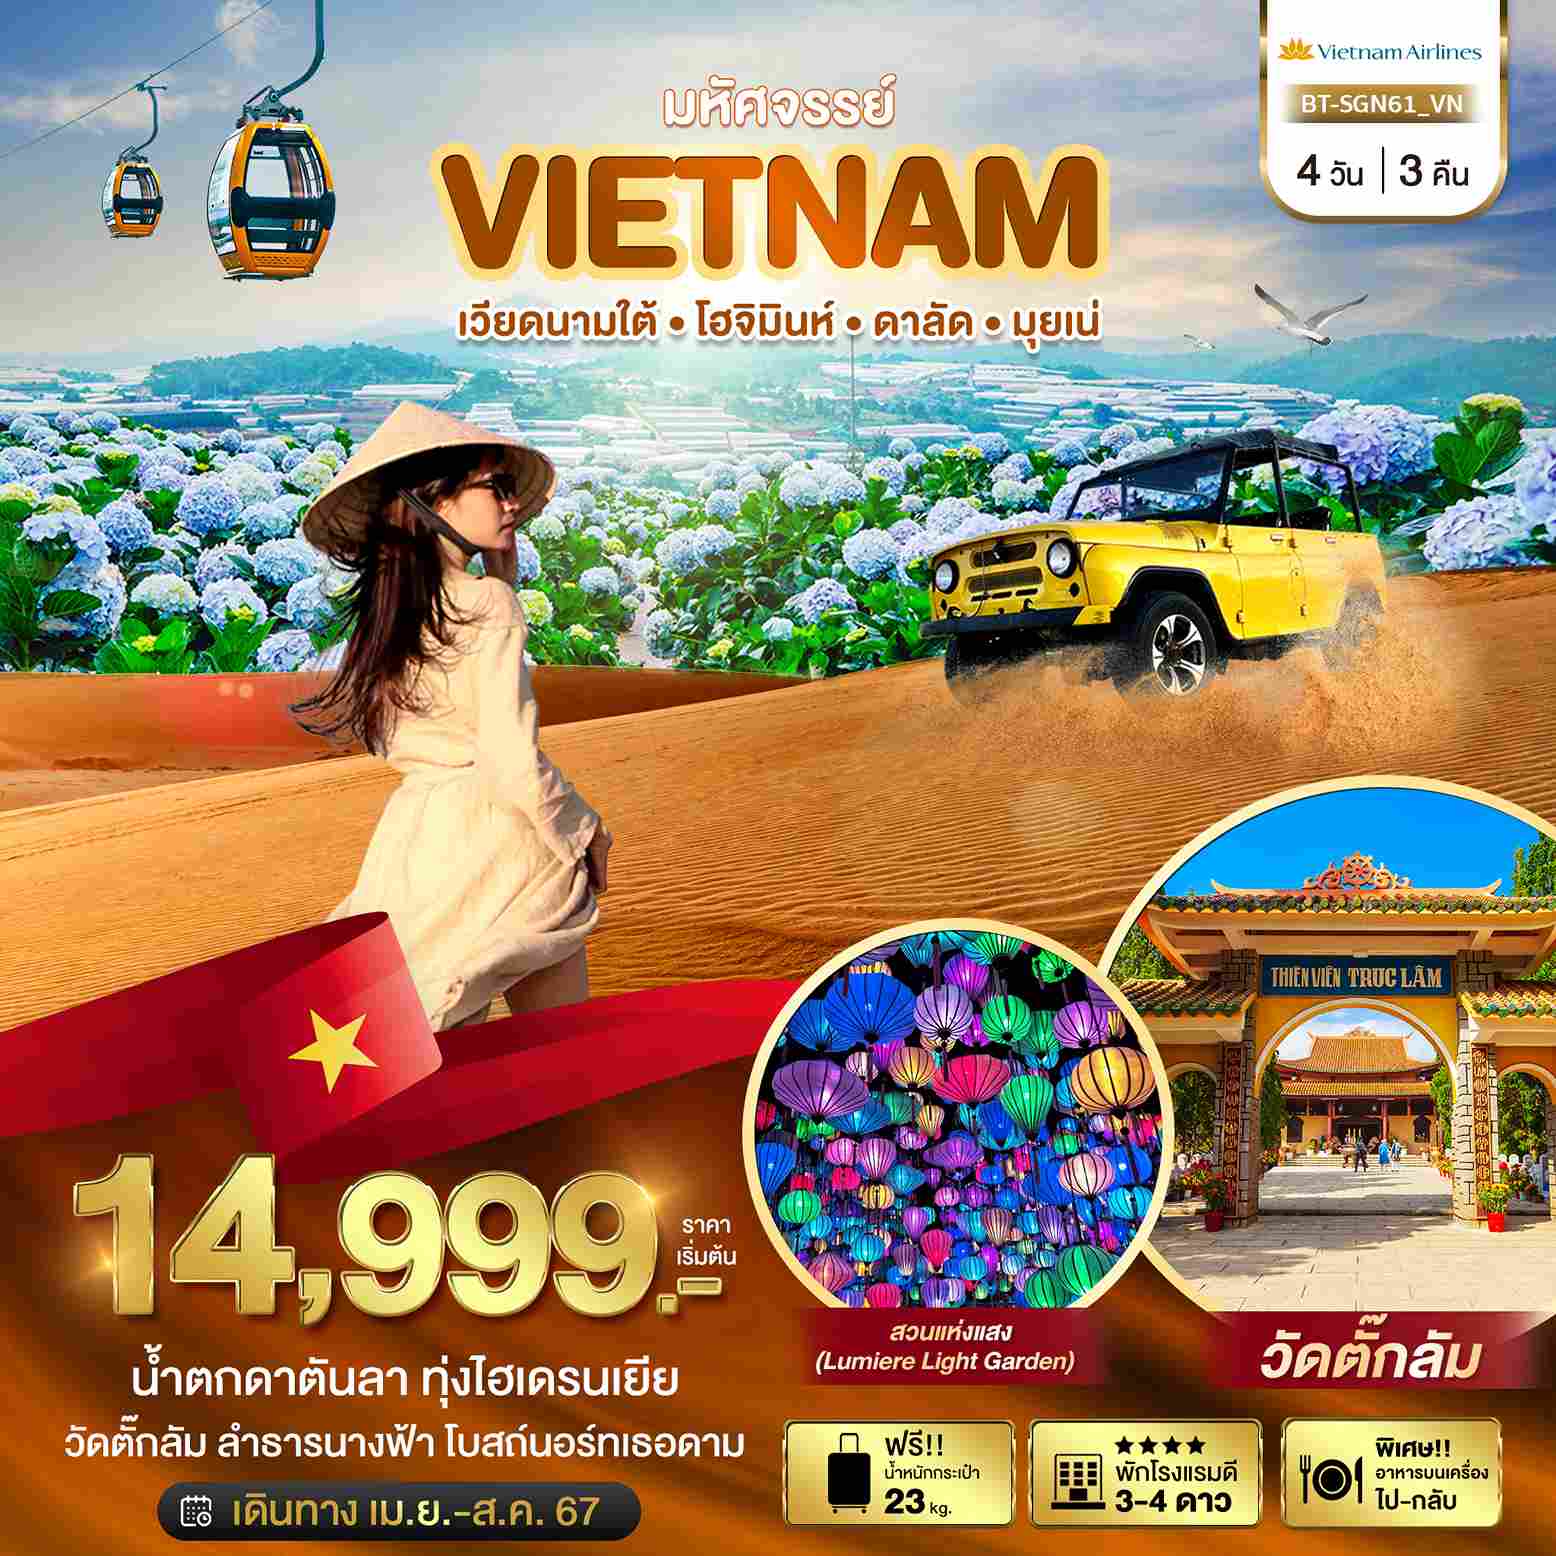 ทัวร์เวียดนาม AVN122-13 เวียดนามใต้ โฮจิมินห์ ดาลัด มุยเน่ SGN61 (090867)